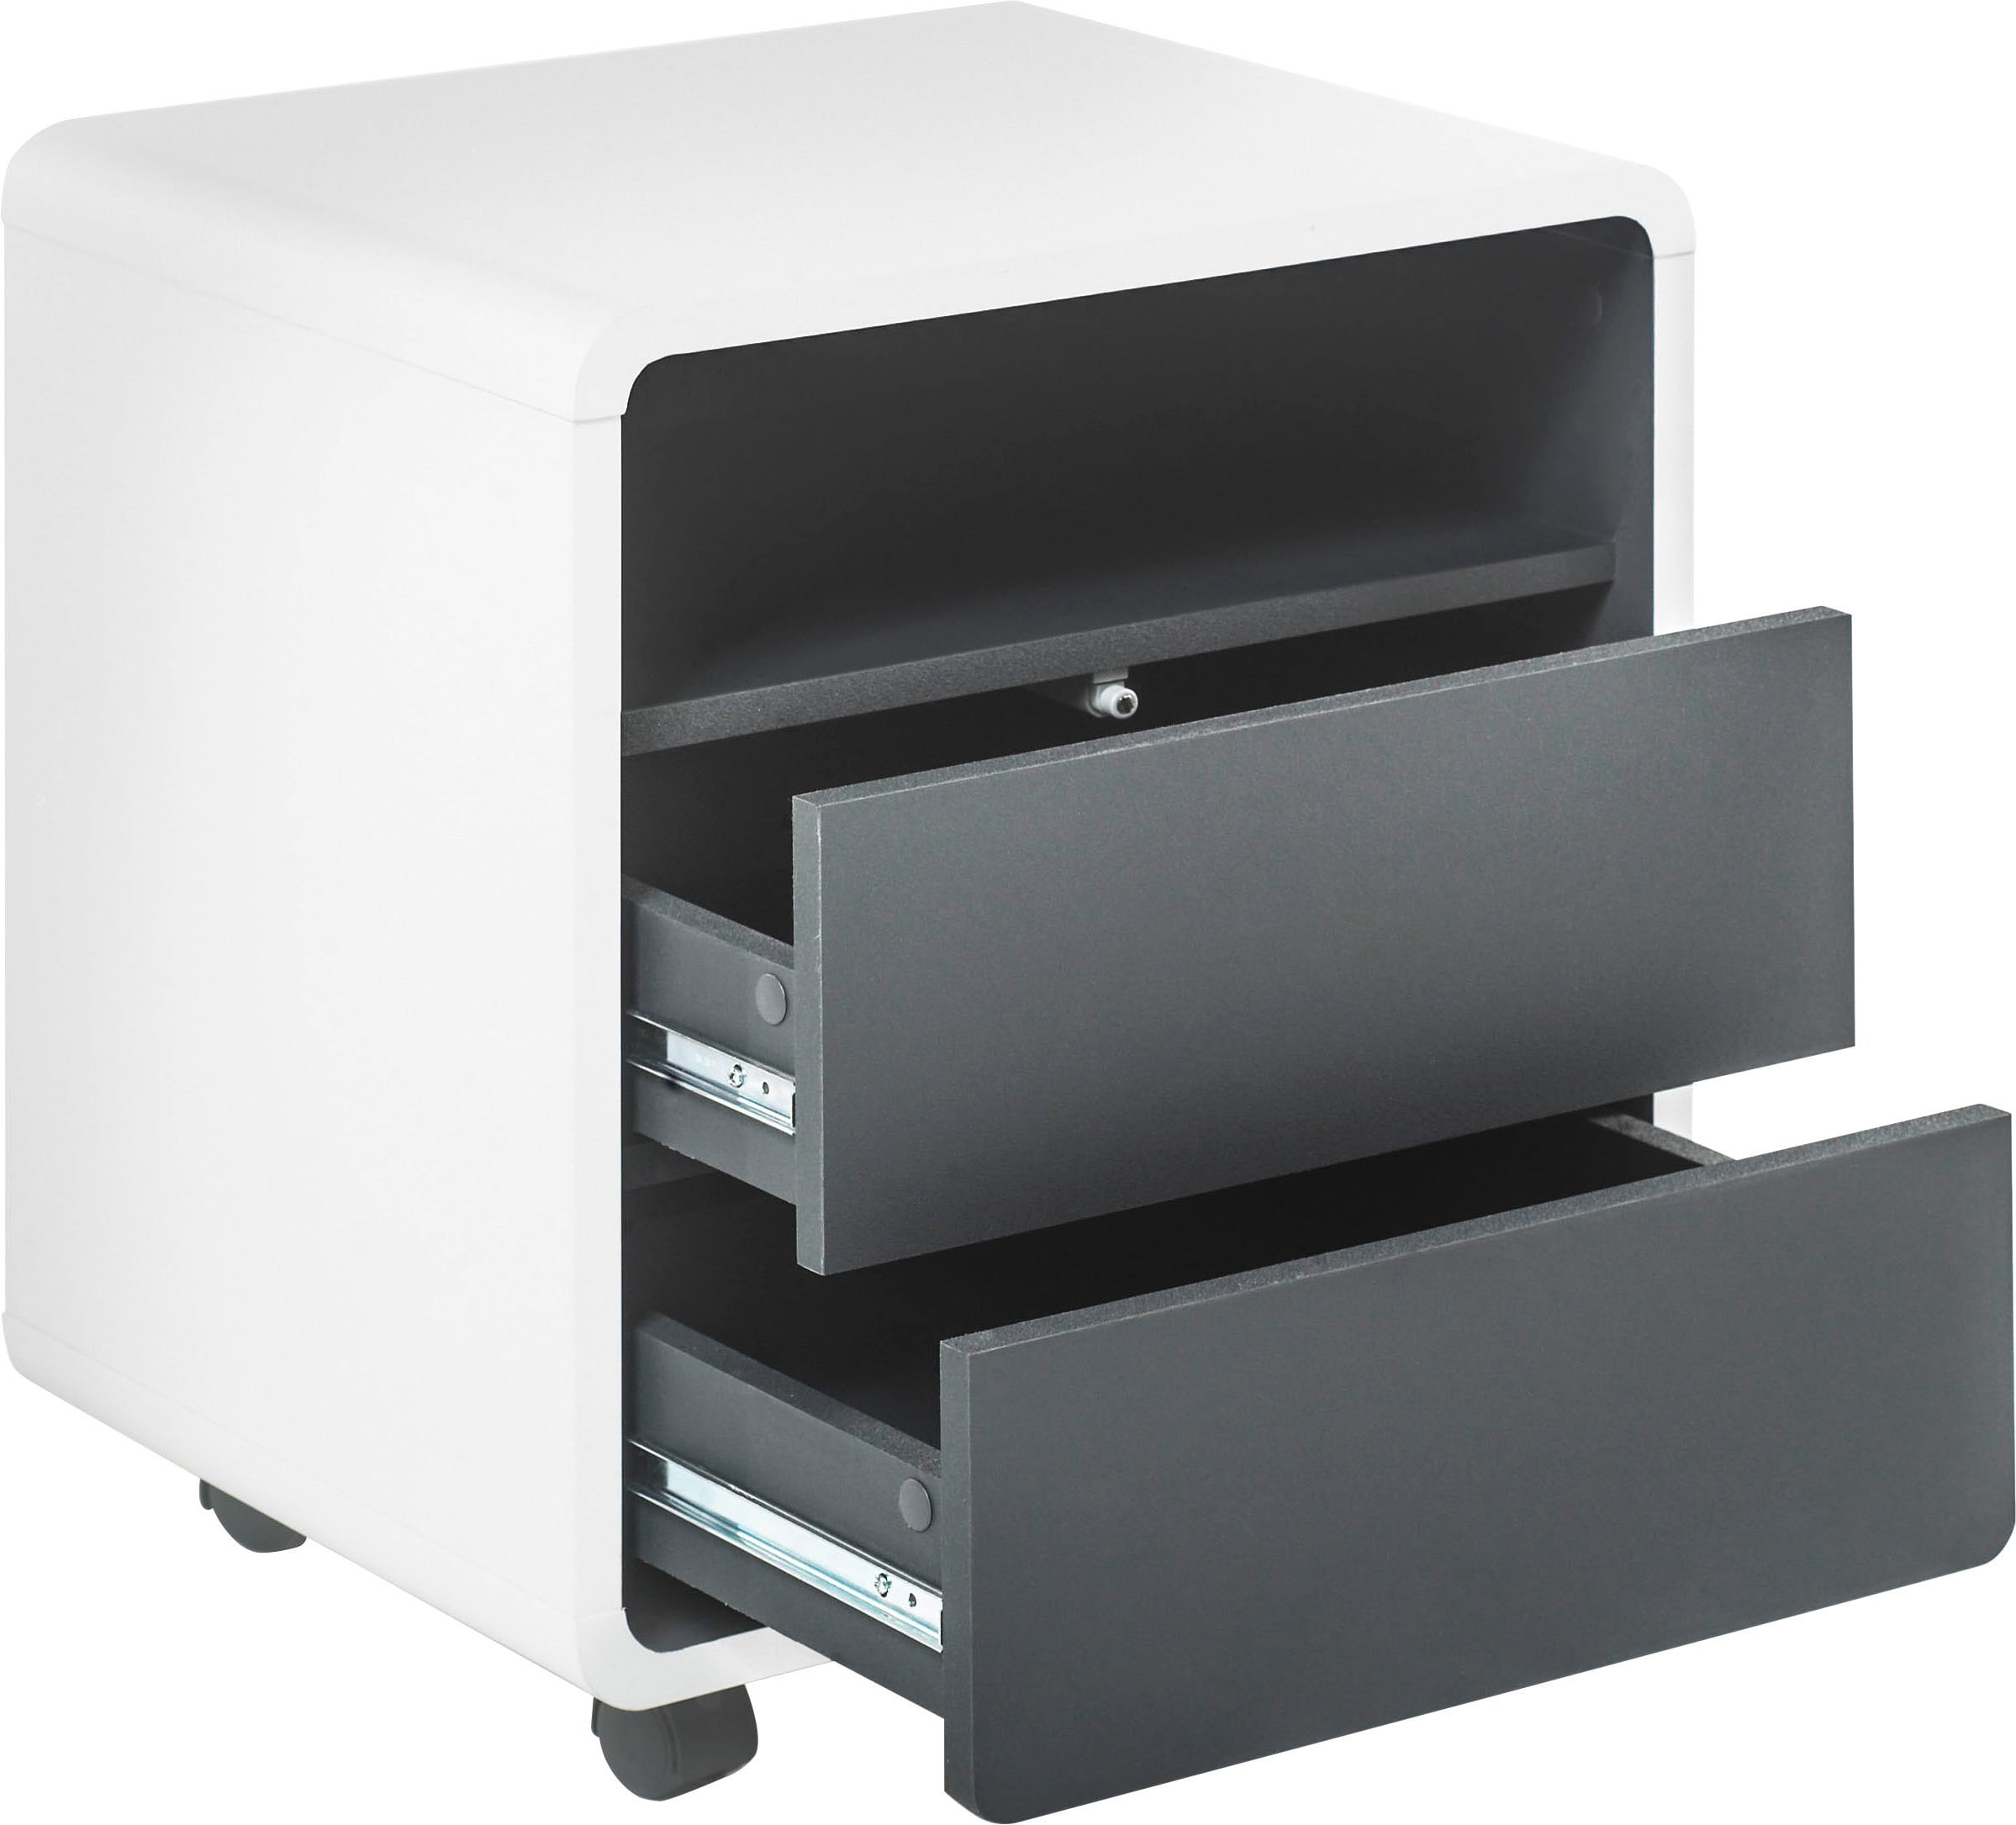 MCA furniture Rollcontainer »Tadeo«, weiß matt, Absetzungen in Grau Matt